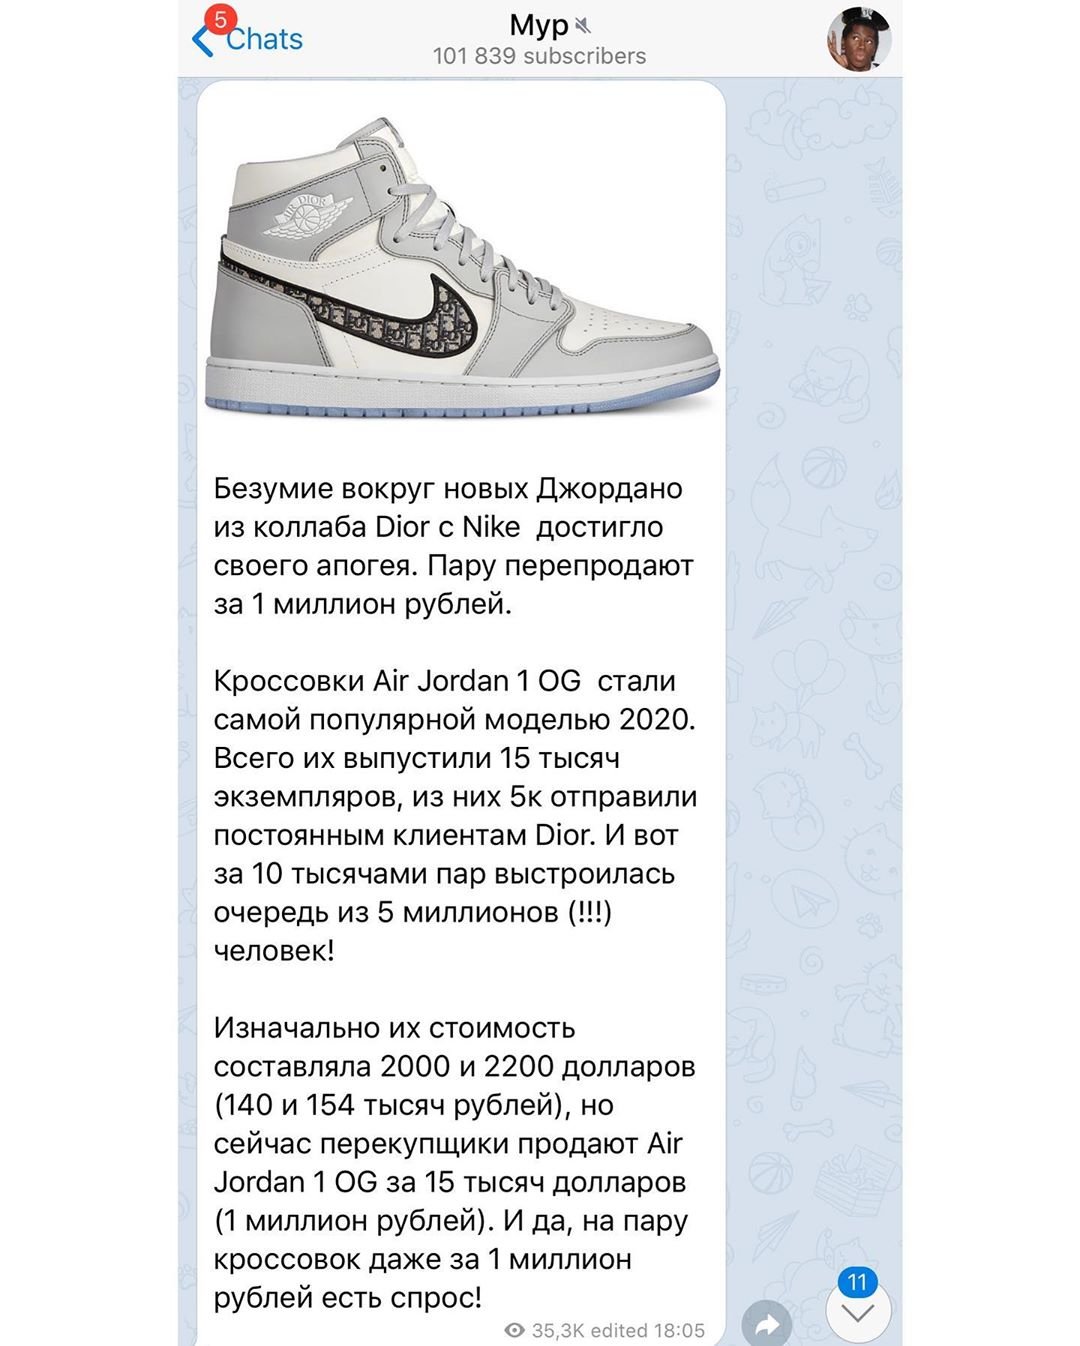 Филипп Киркоров приобрёл кроссовки за 1 миллион рублей